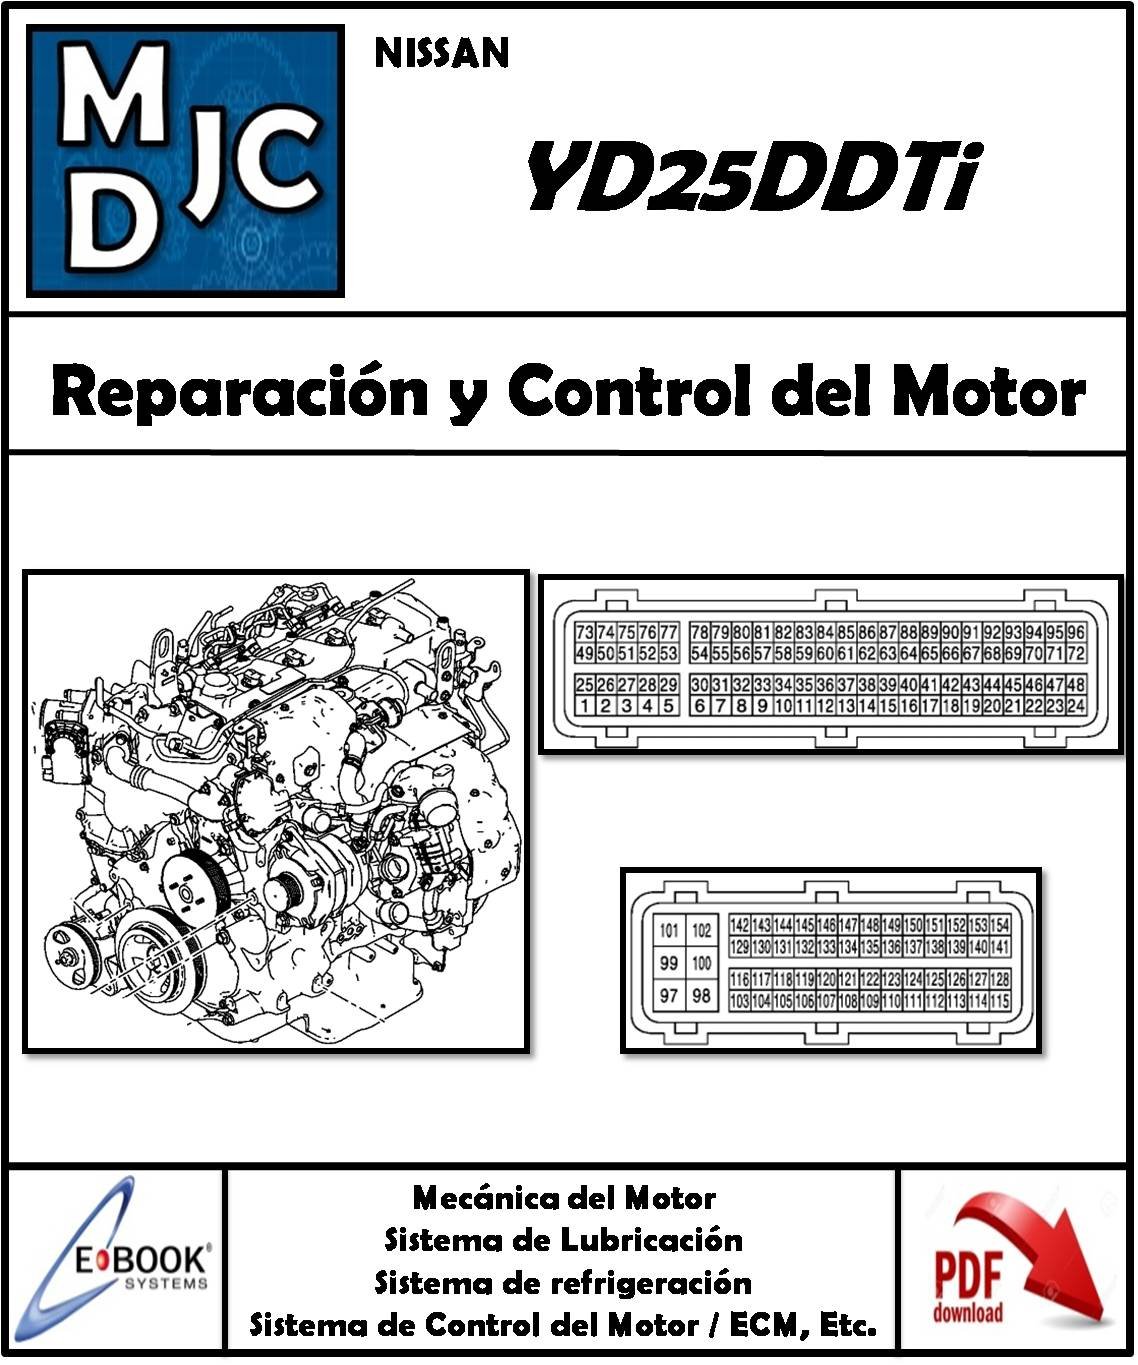 Nissan YD25DDTi / L4 DOHC (Diesel) 2.5 L